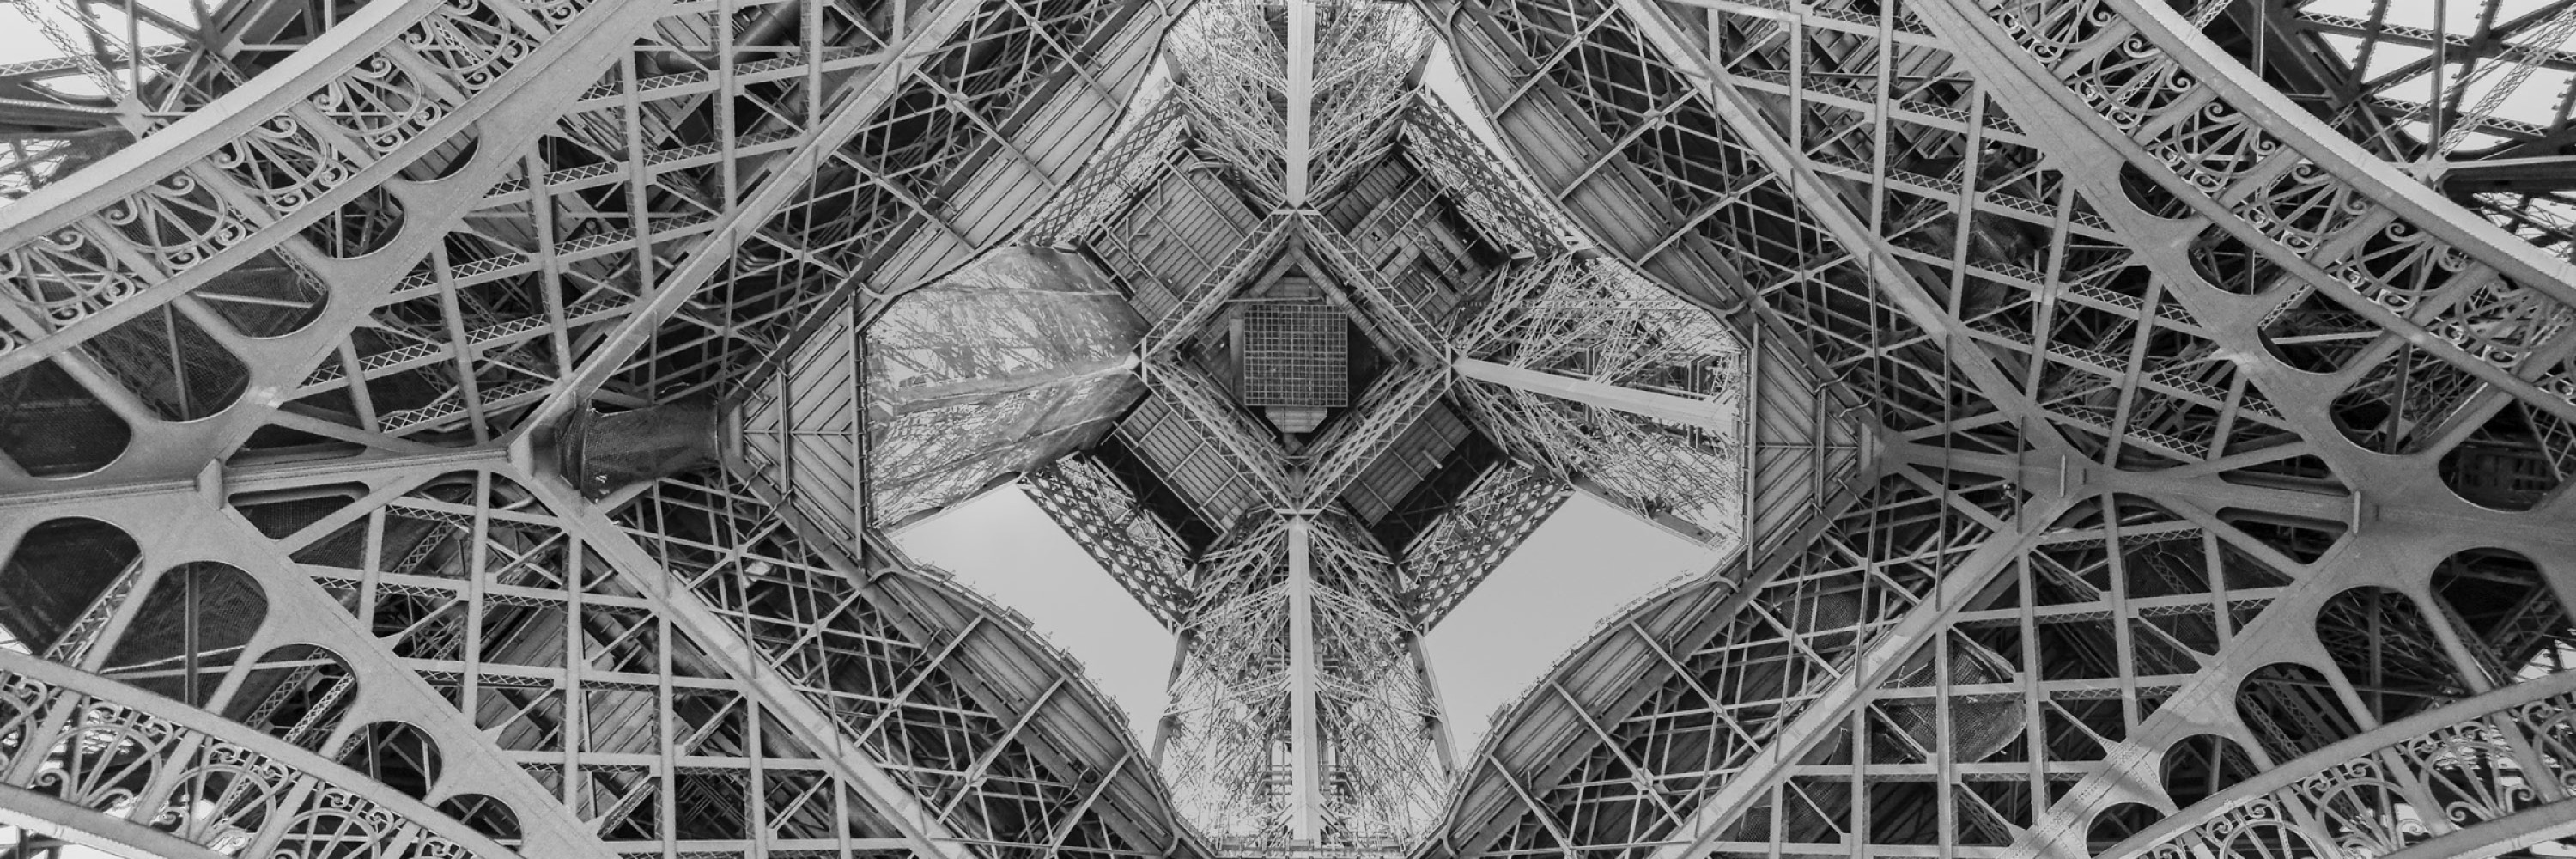 vue-de-sous-la-tour-effeil-paris-france-histoire-graphique-contraste-manufacture-patrimoine-engament-noir-et-blanc.jpg